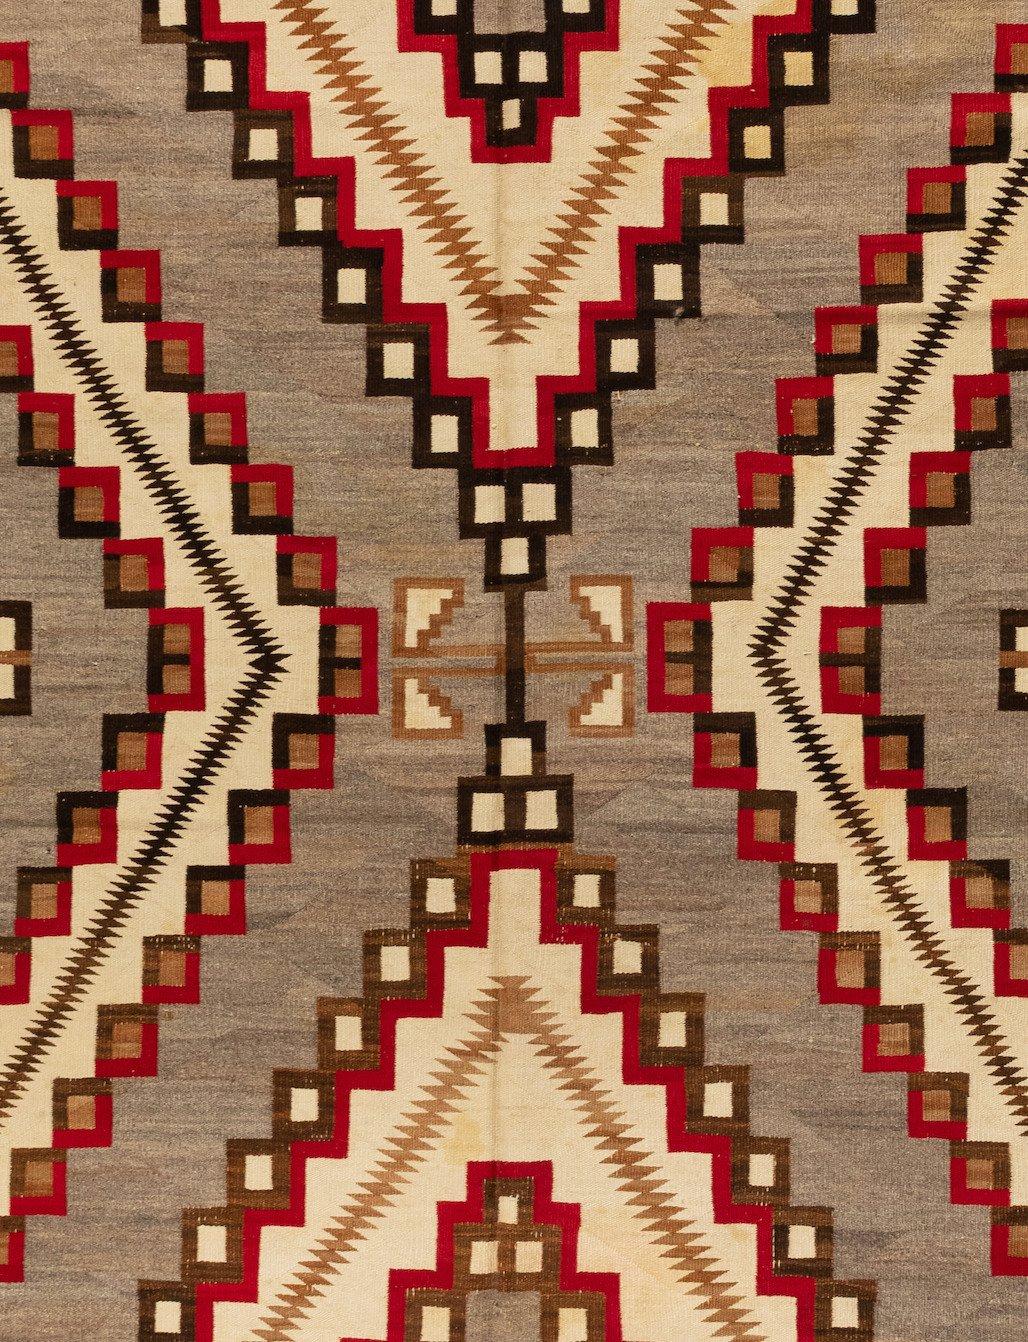 Dies ist eine große, und daher selten, antike amerikanische Navajo Geometric Teppich, circa 1920-1930s in grau und Elfenbein und misst 6,8 x 10,2 ft.

Seit den Anfängen der Weberei bei den Navajos um 1700 war das Weben ein wichtiger